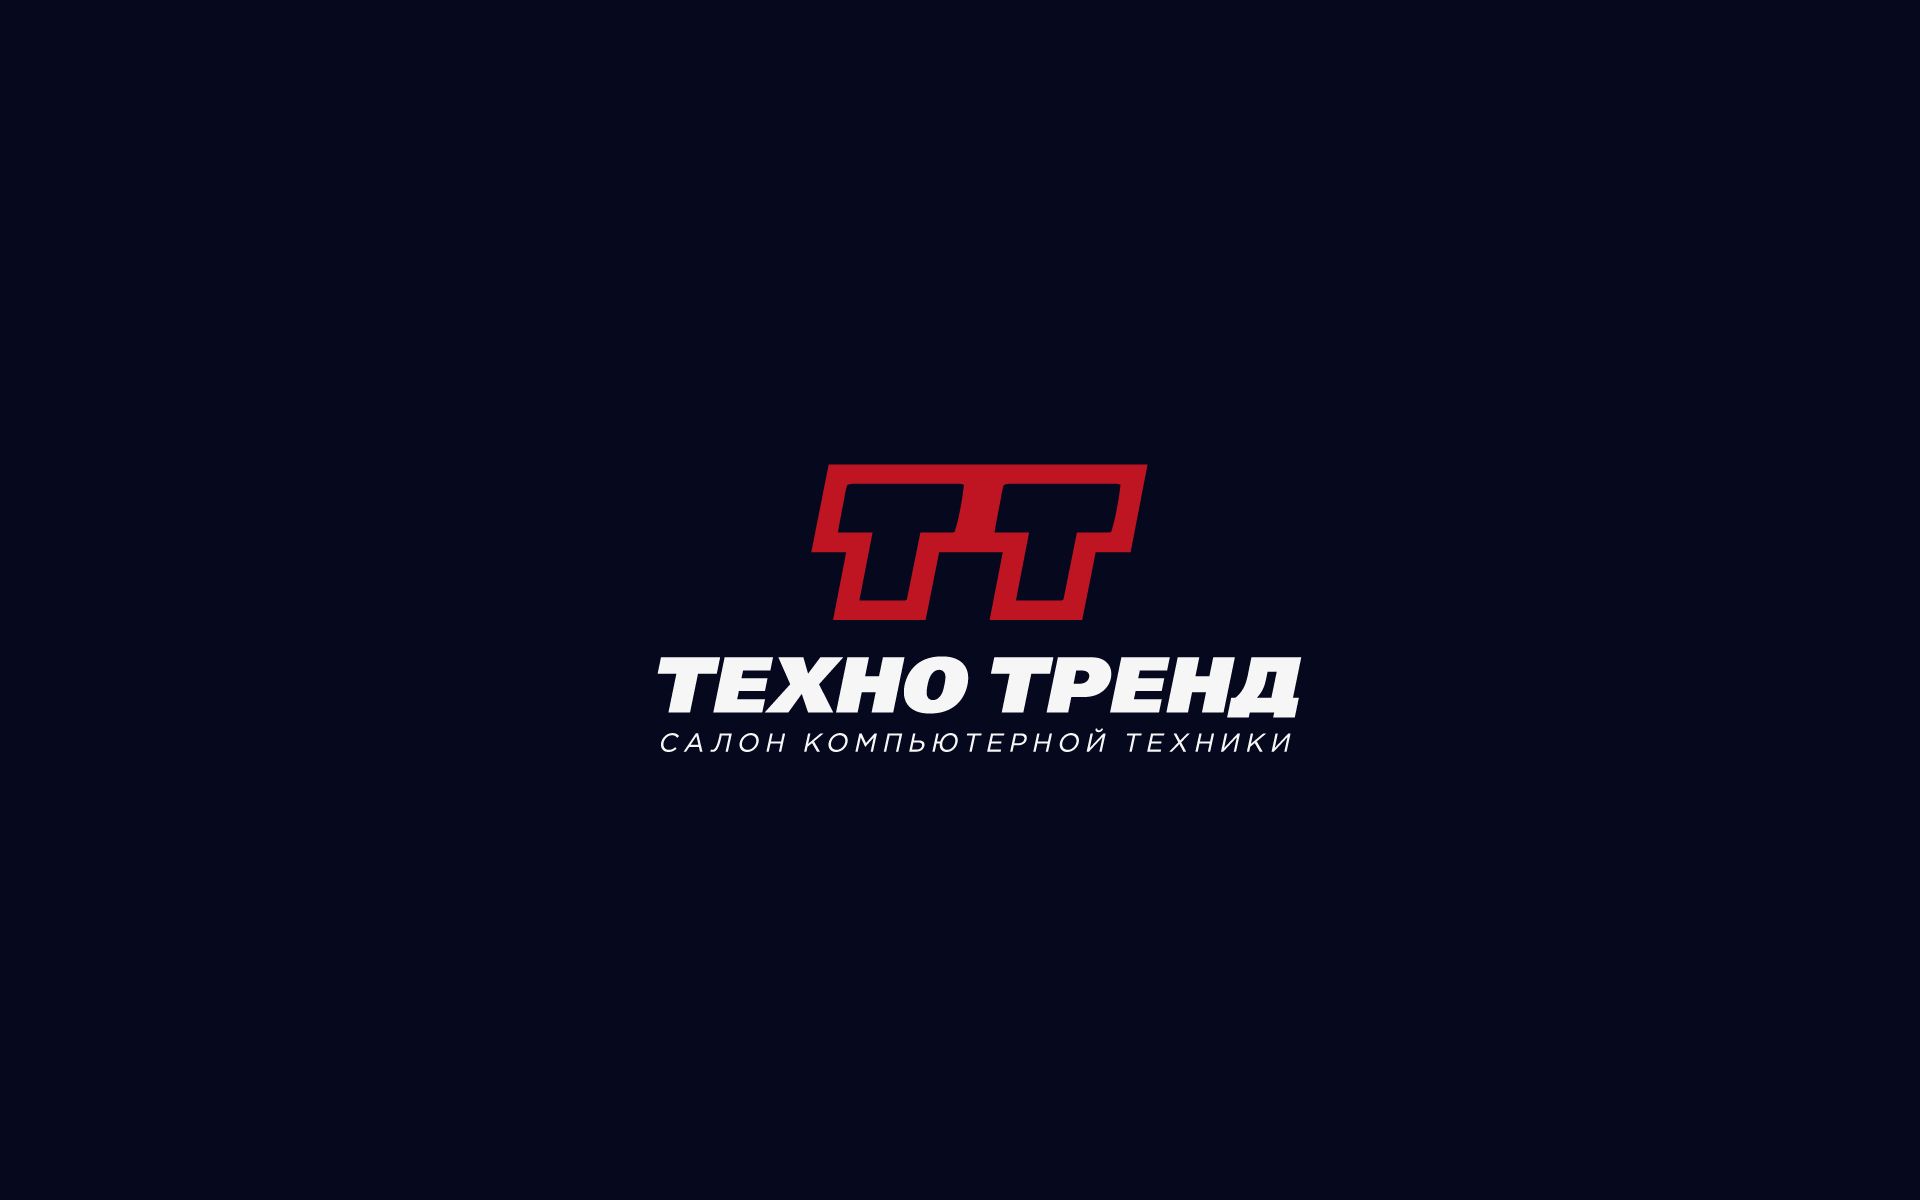 Лого и фирм. стиль для ИТ-компании - дизайнер U4po4mak